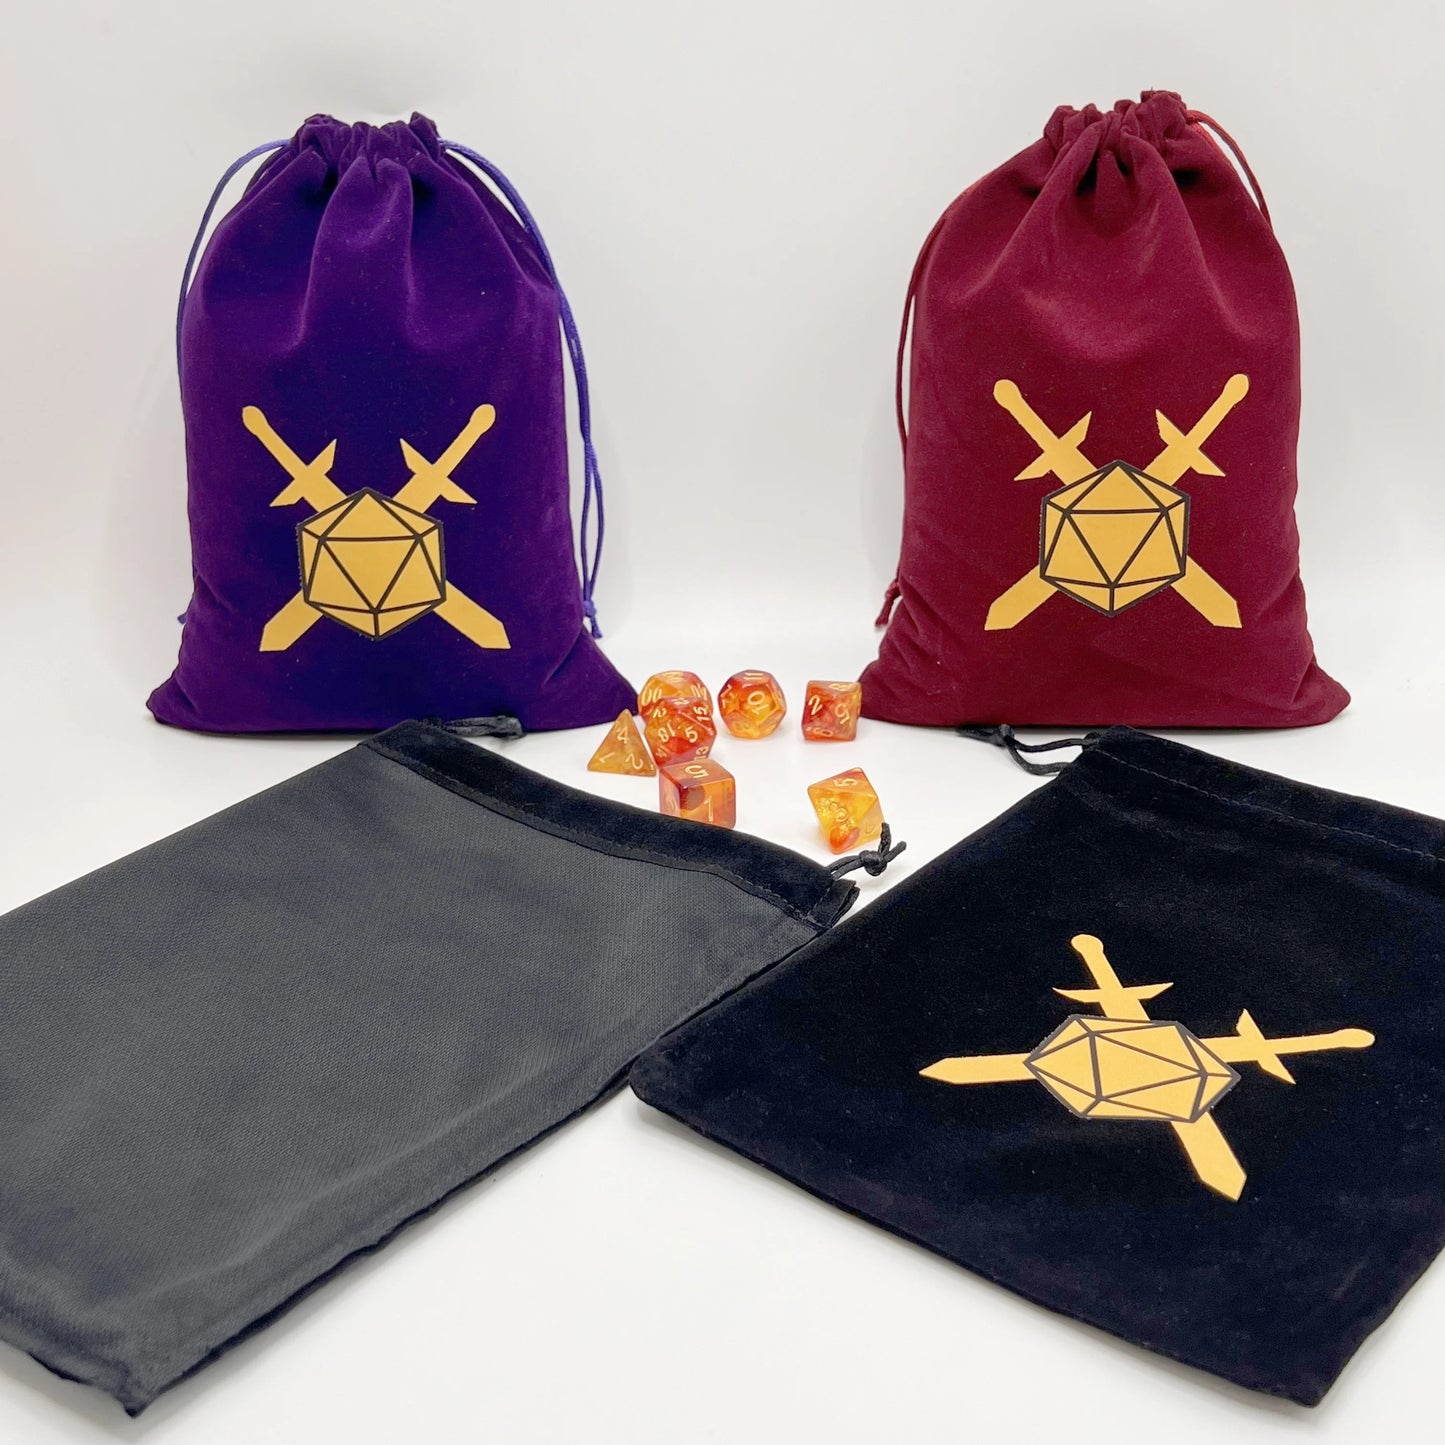 Bolsa de dados I, bolsa de terciopelo con cordón, tamaño Ideal para tarjetas de Tarot, oráculo, accesorios de dragones y mazmorras, joyería de runas, 1 Uds.